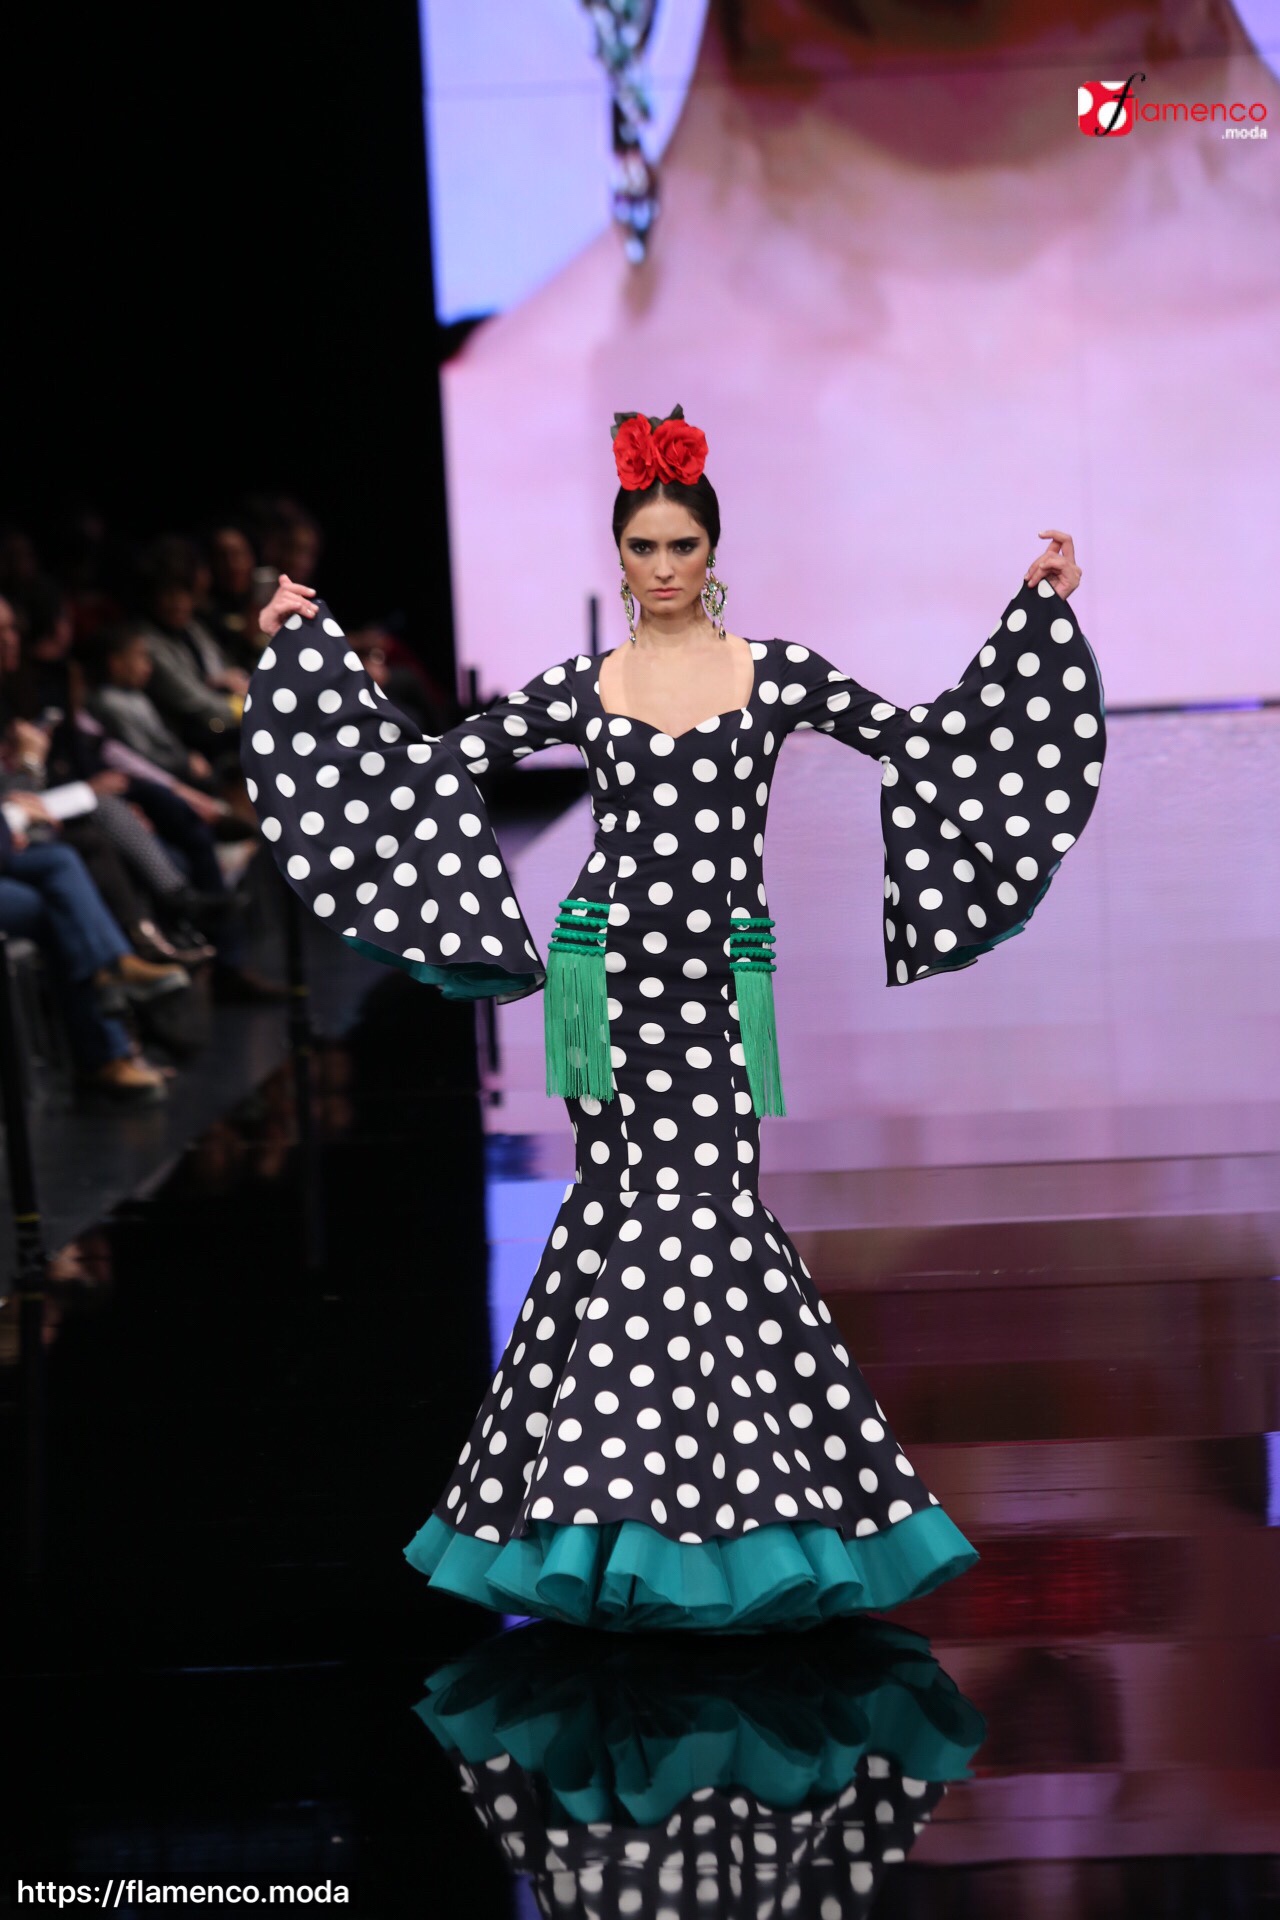 Pilar Rubio “En un rincón mi alma” - Simof 2018 | Flamenca - Flamenco.moda